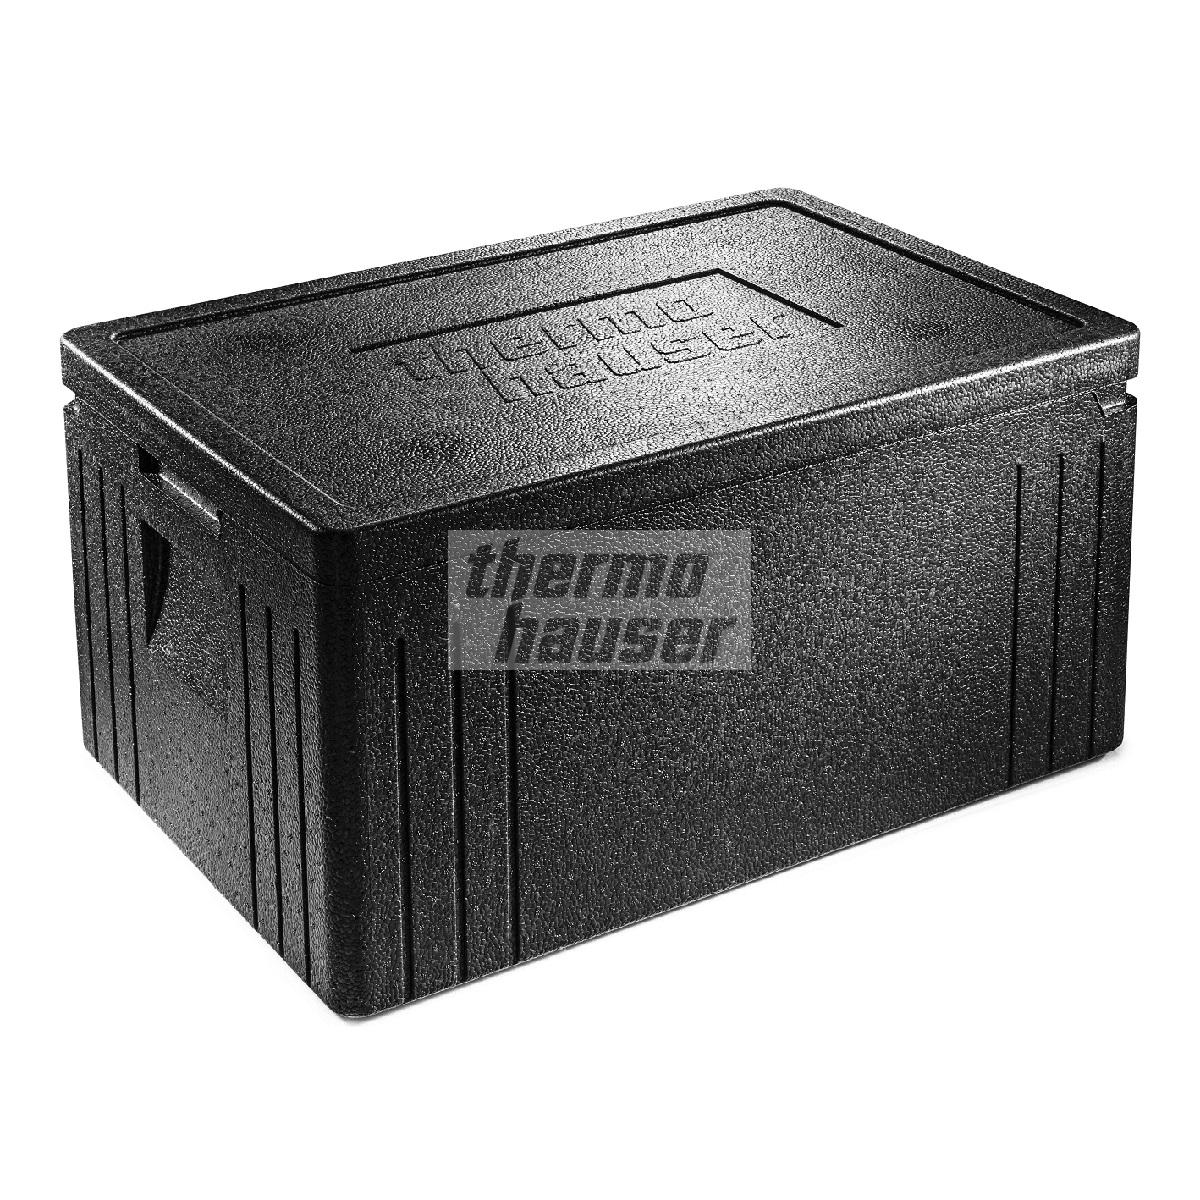 EPP Thermobox GN 1/2, 390x330x180 mm, 10 ltr, mit Deckel, schwarz